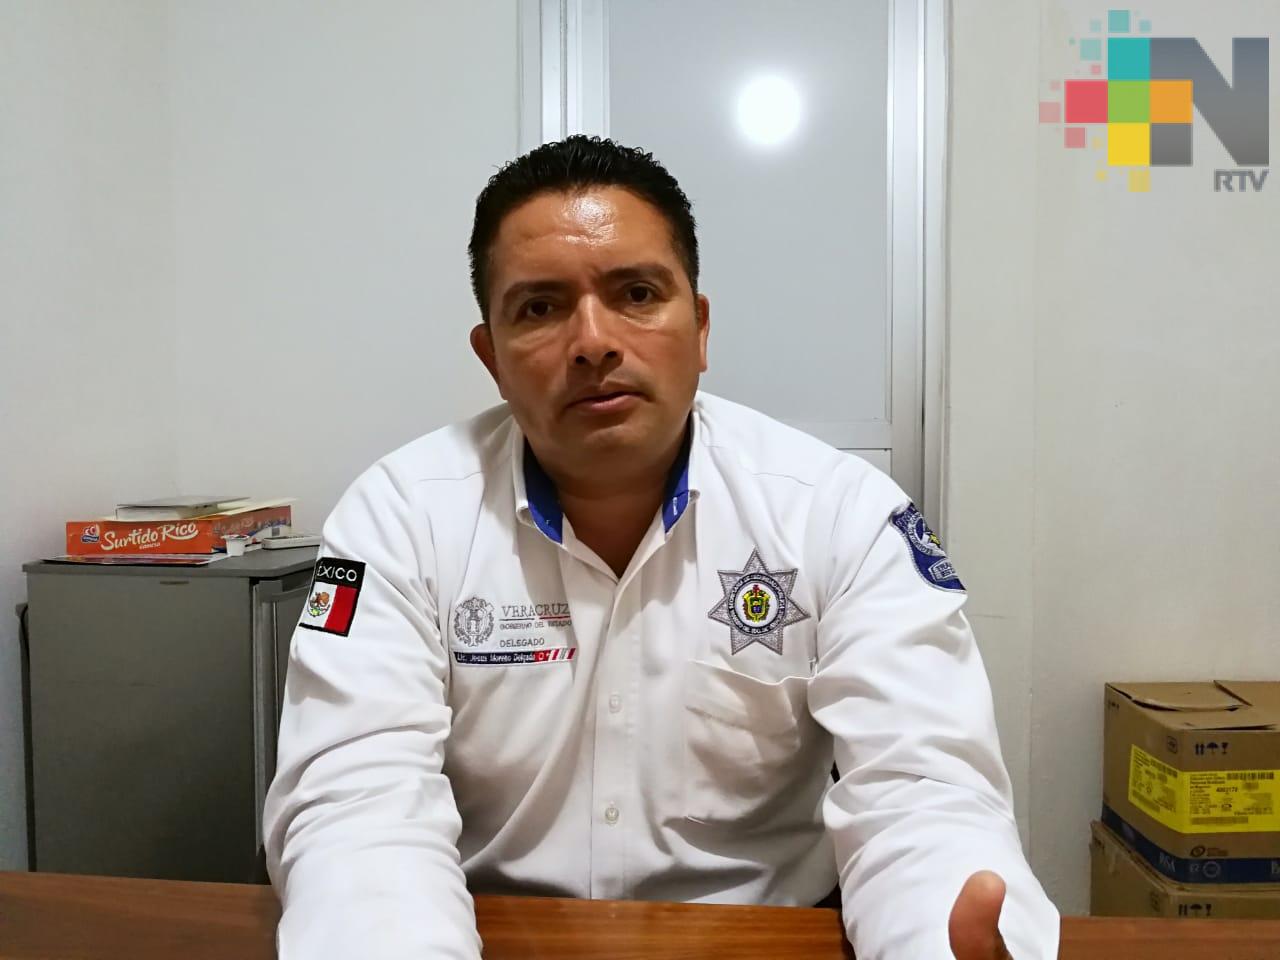 Delegación de Tránsito en Coatzacoalcos exhorta a pagar multas y evitar actos de corrupción